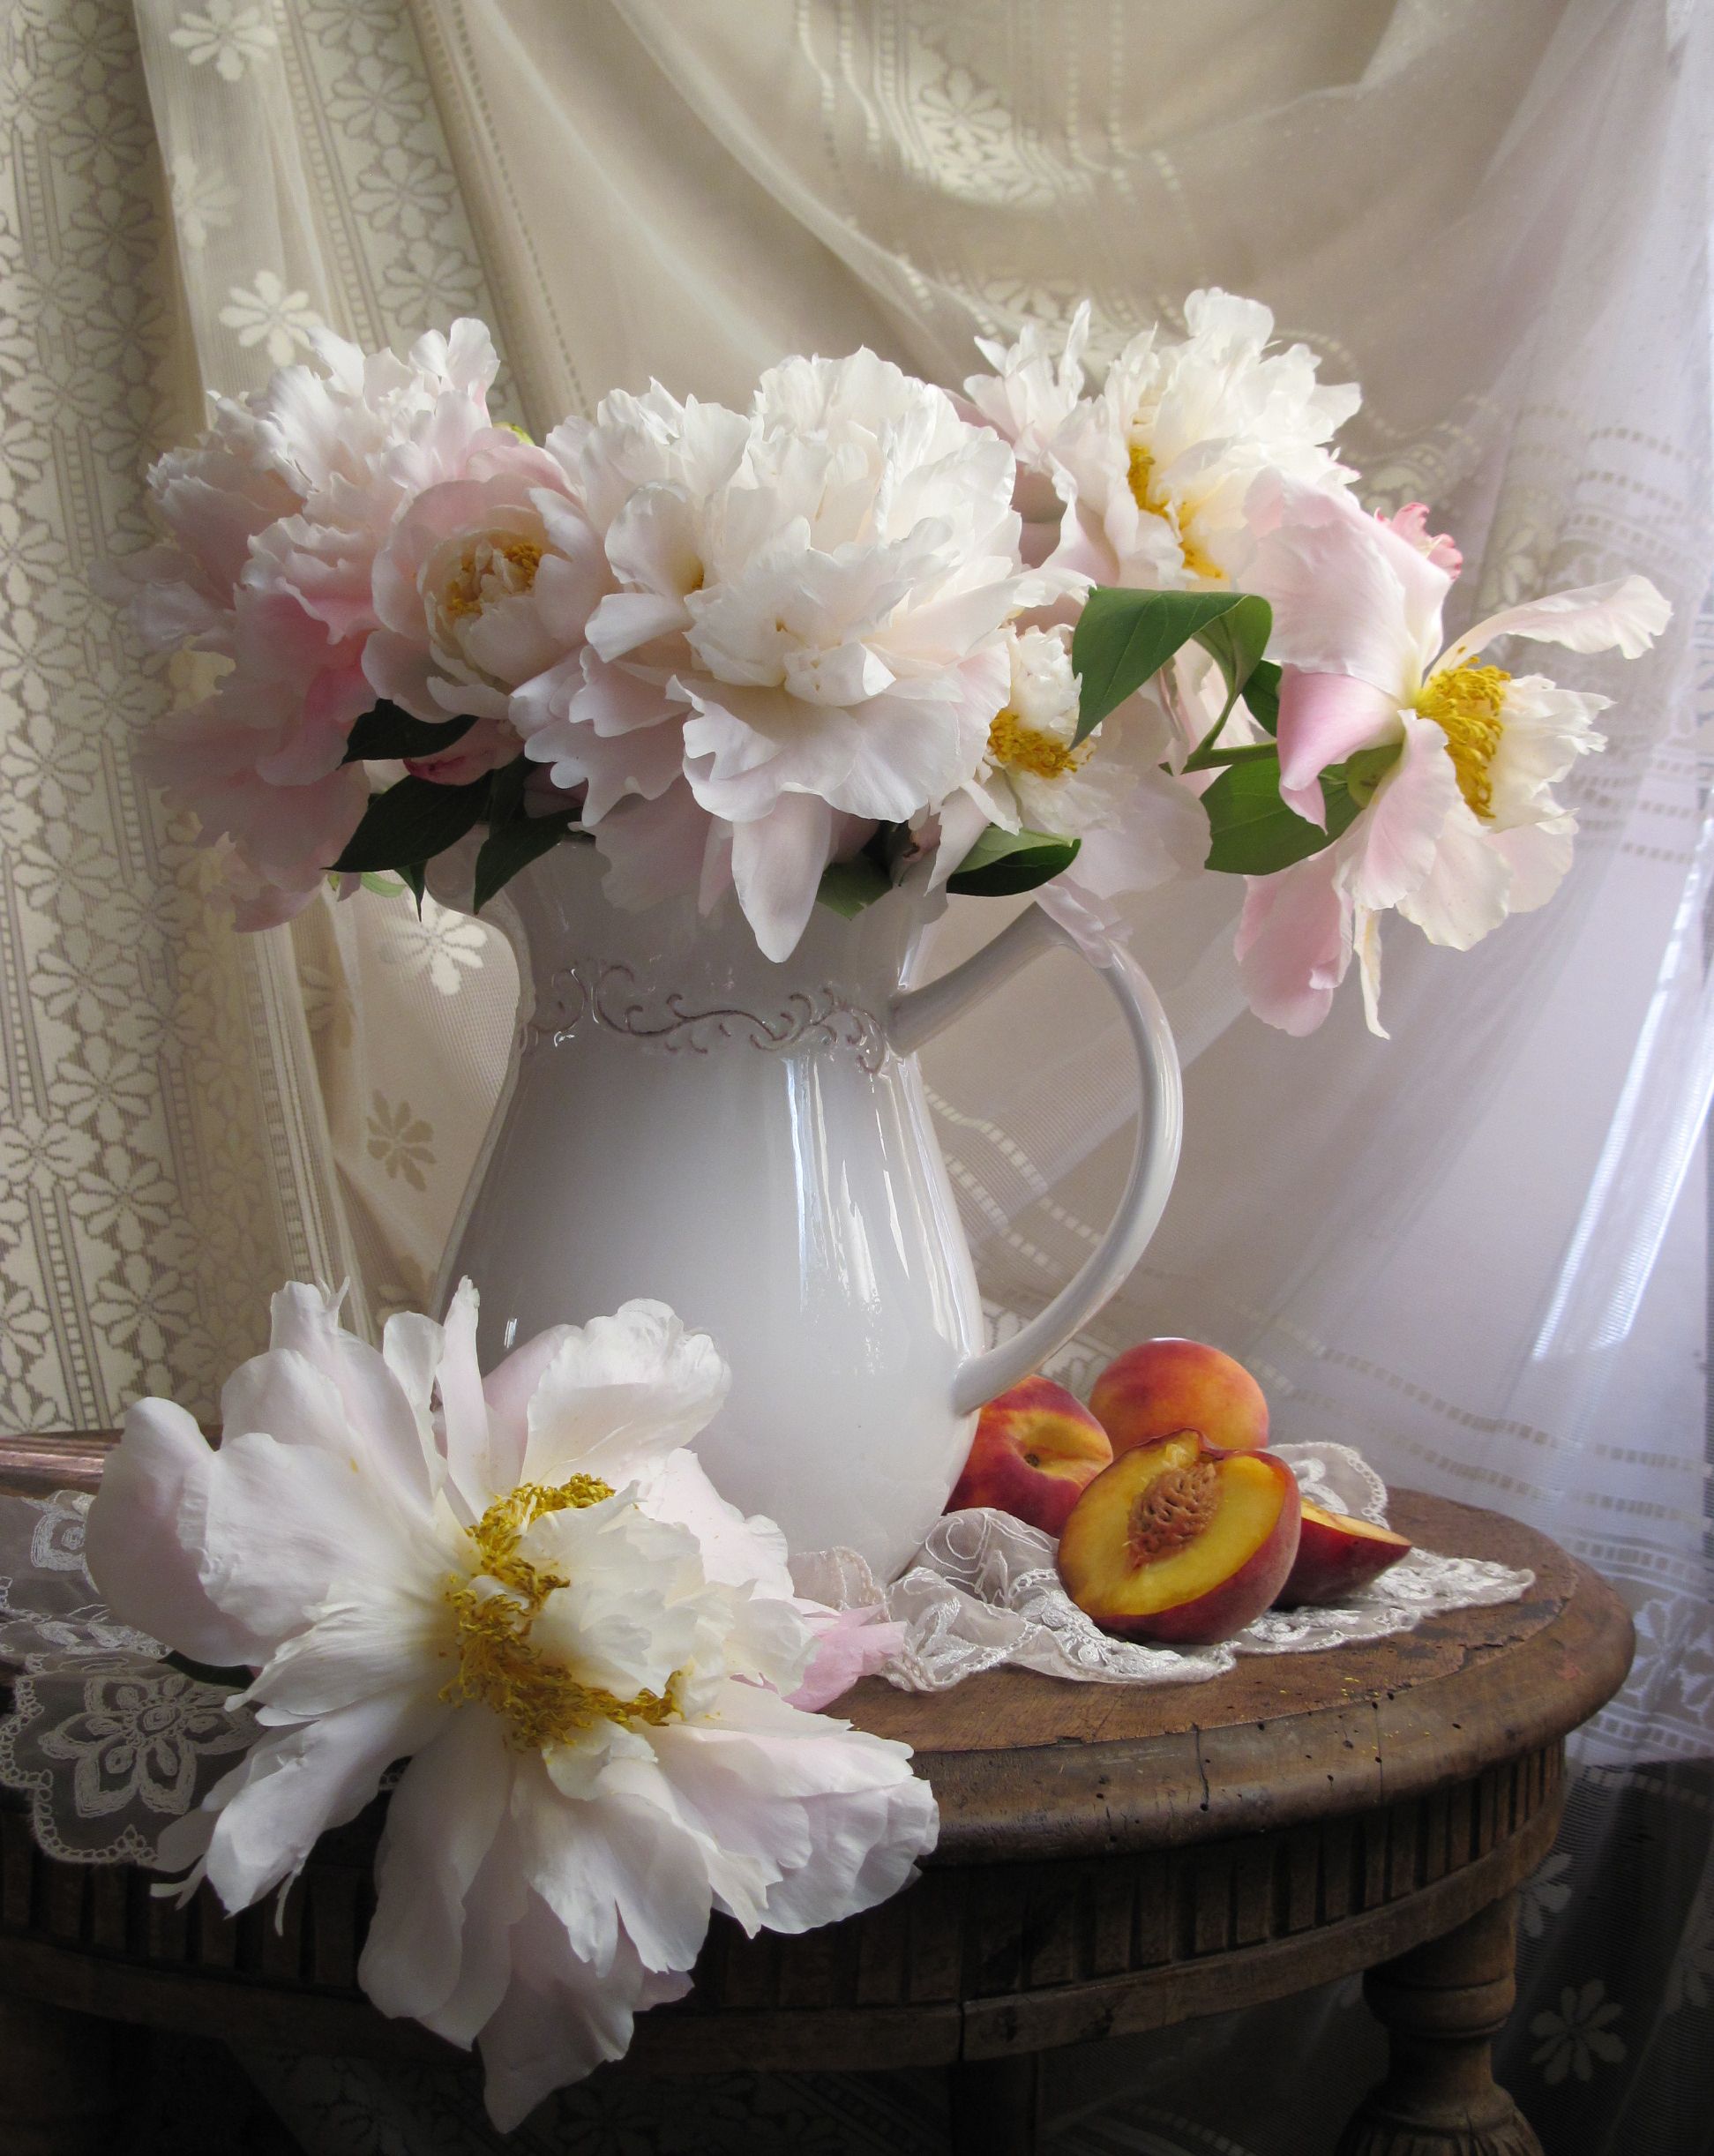 цветы, букет, пионы, персики, кувшин, фарфор, салфетка, тюль, Наталия Тихомирова